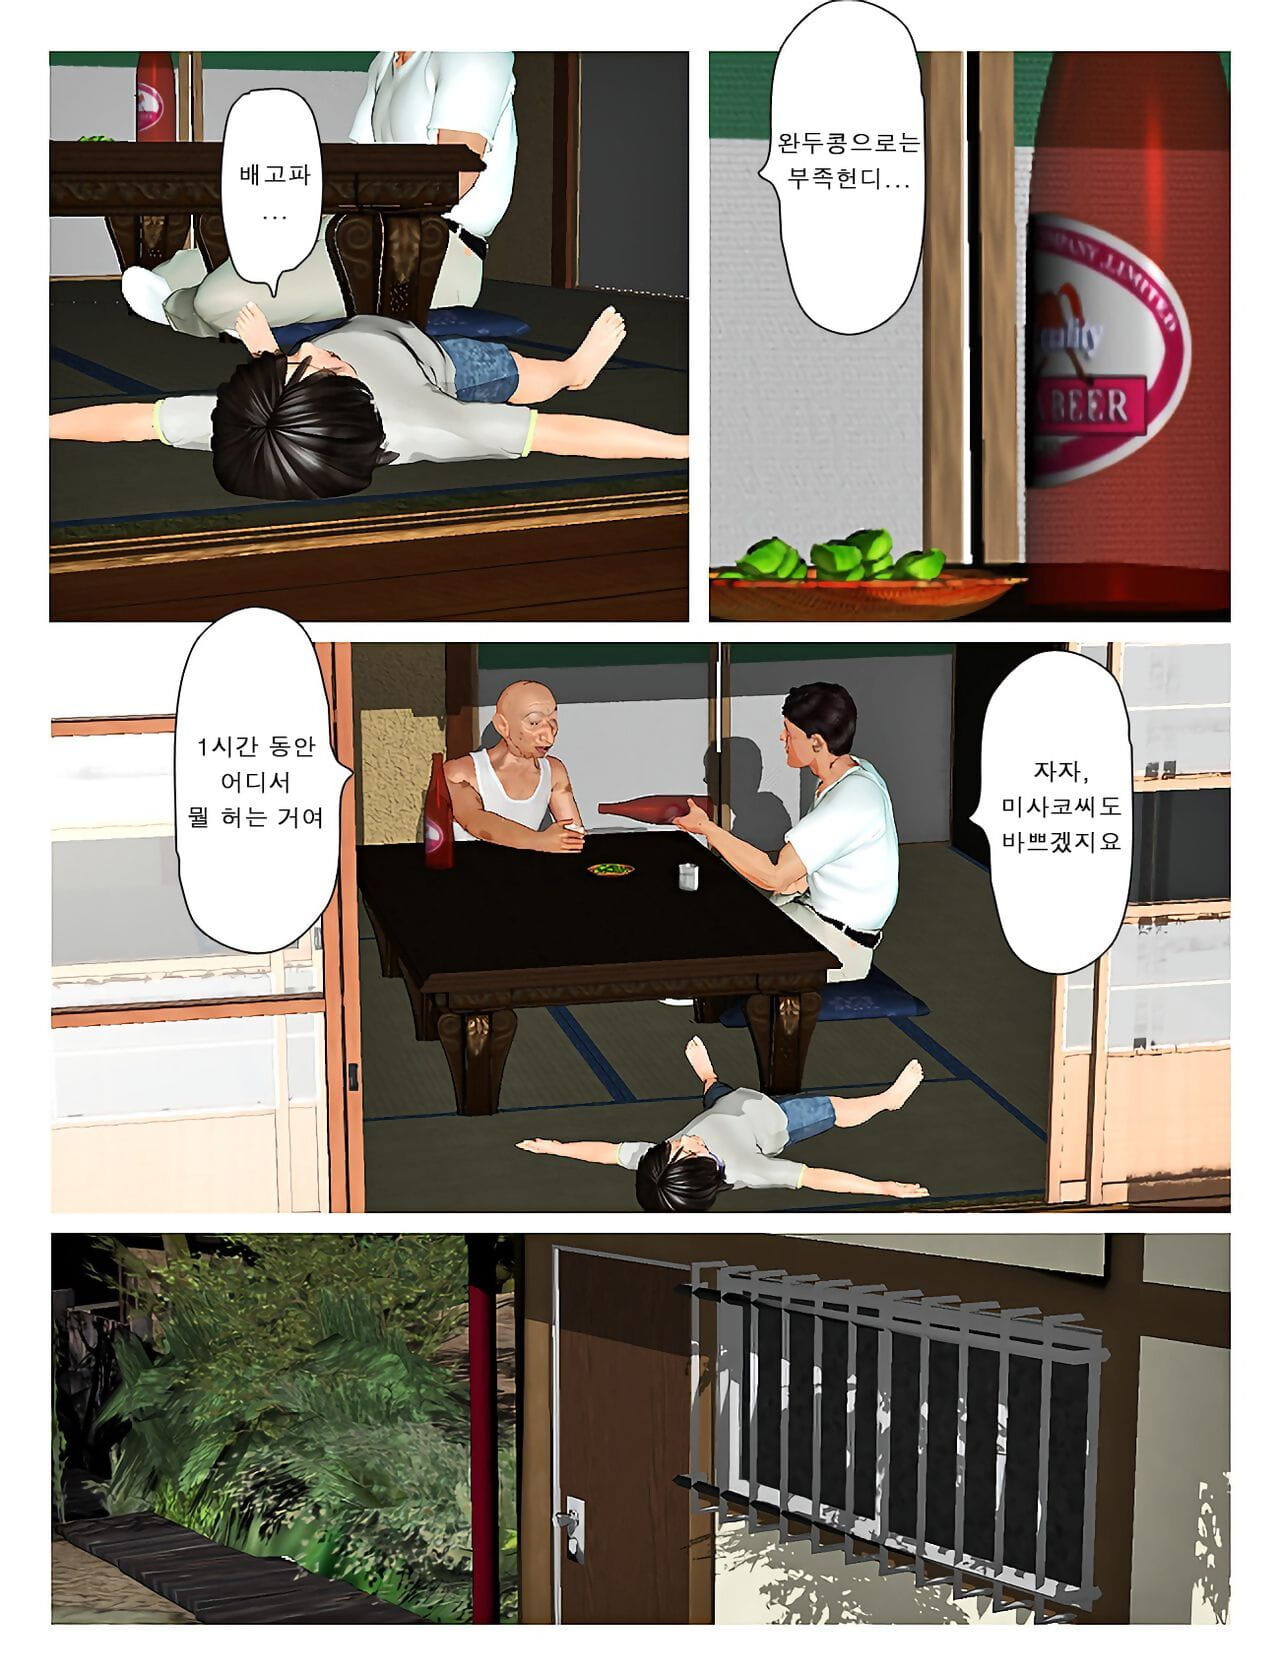 Kyou कोई सह के साथ खेलना! सं 2019:3 오늘의 미사코씨 2019:3 page 1